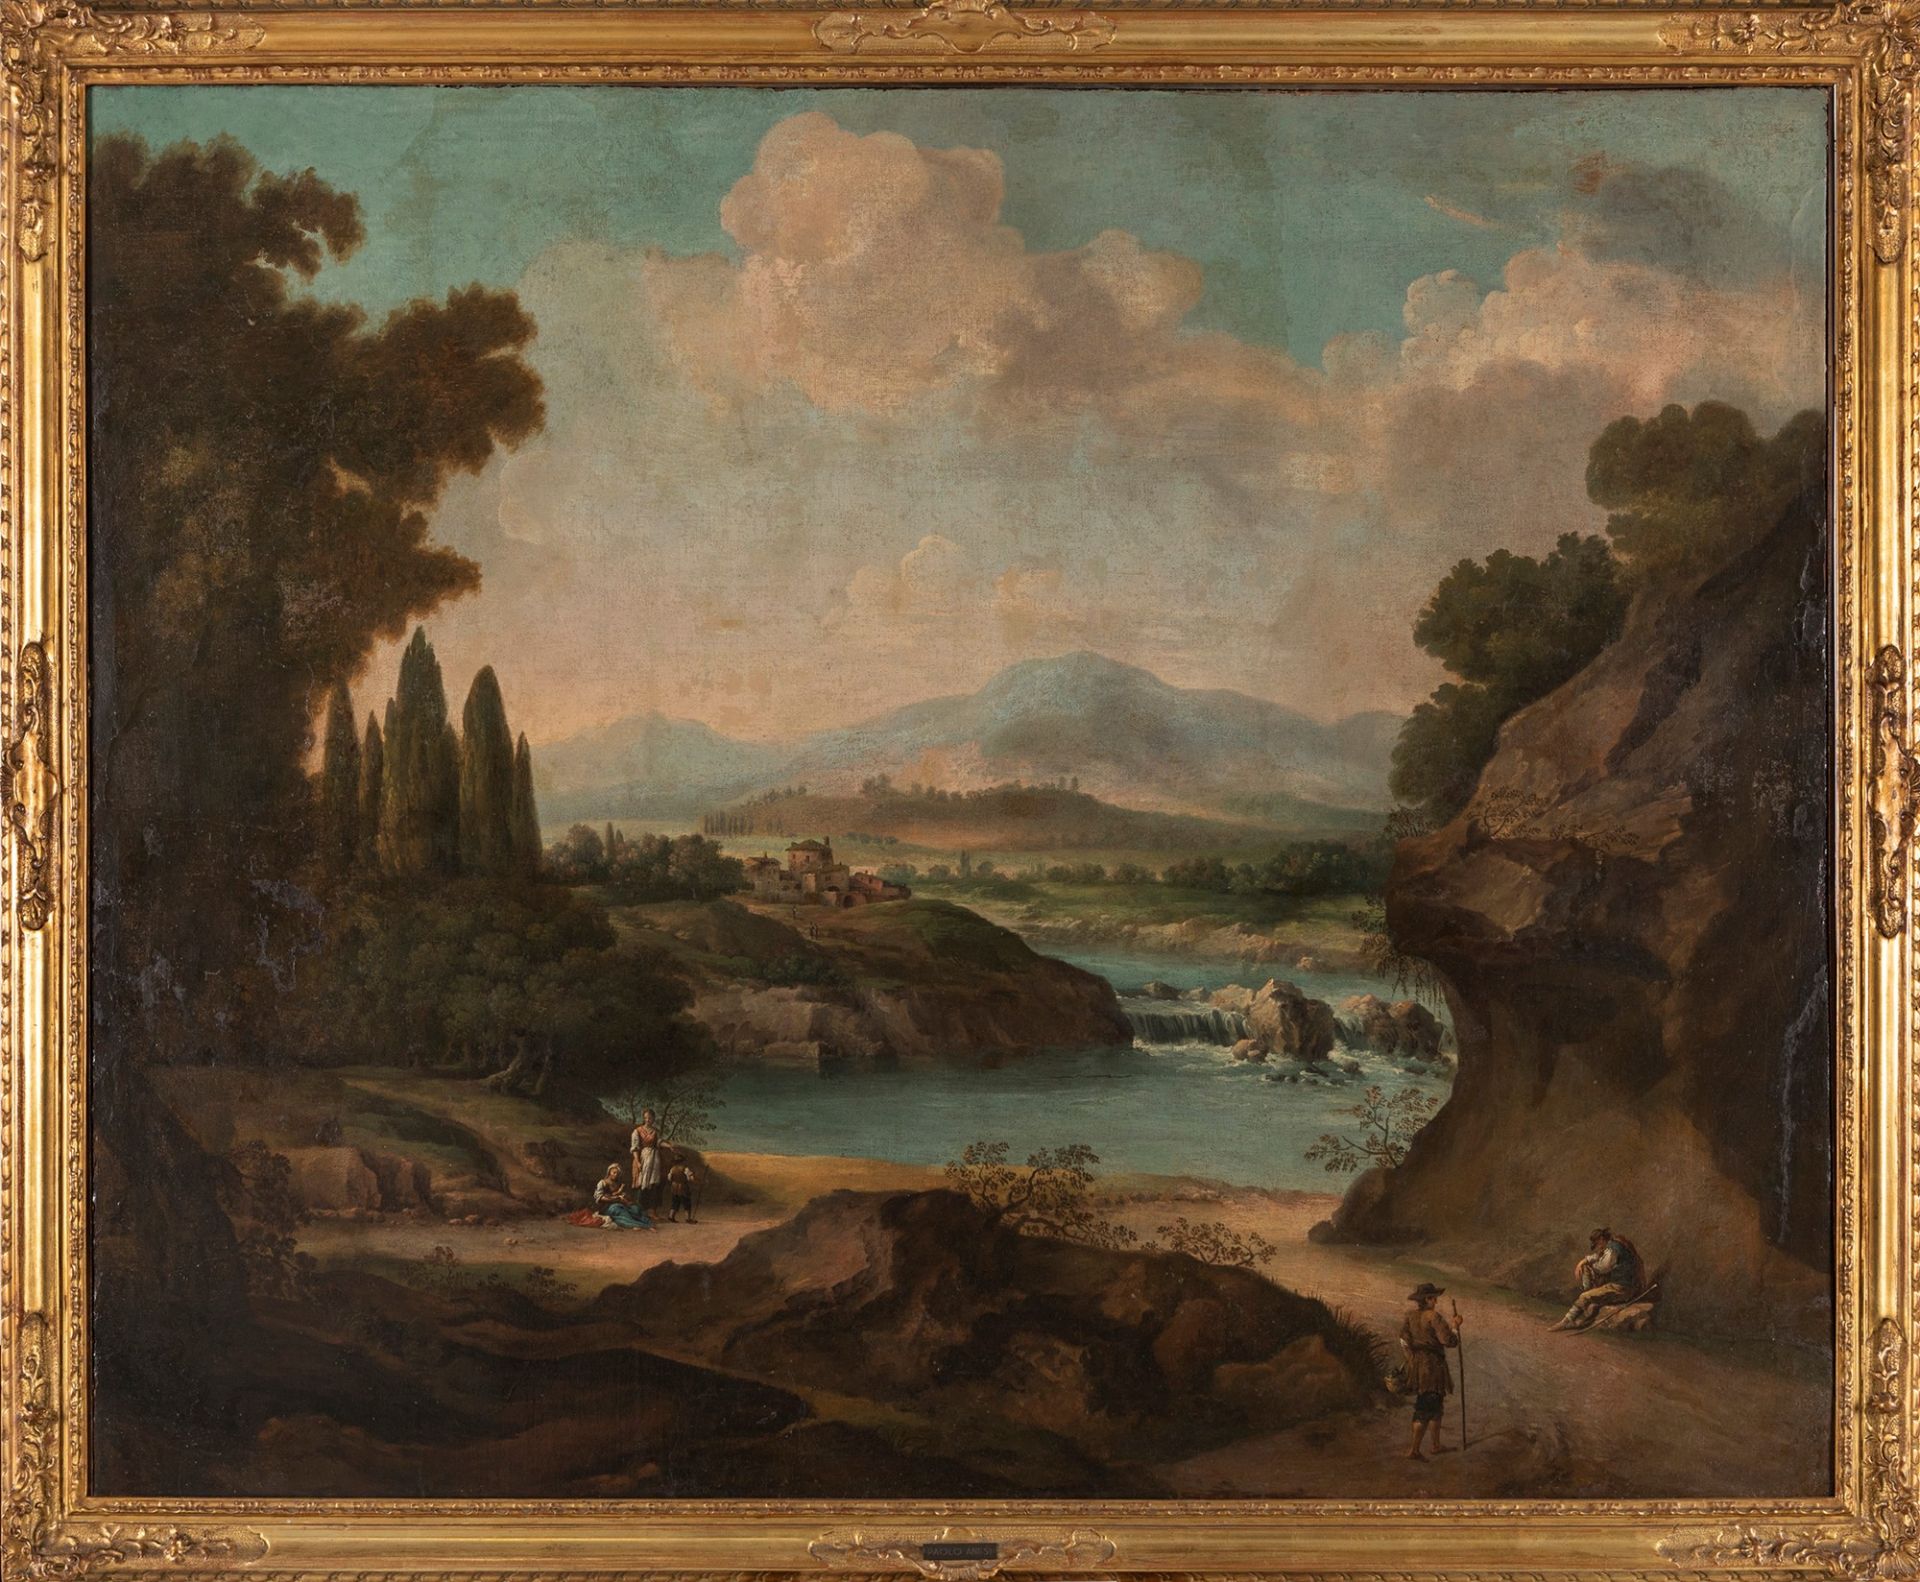 Scuola romana, fine secolo XVII - inizi secolo XVIII - River landscape with figures and a vlllage in